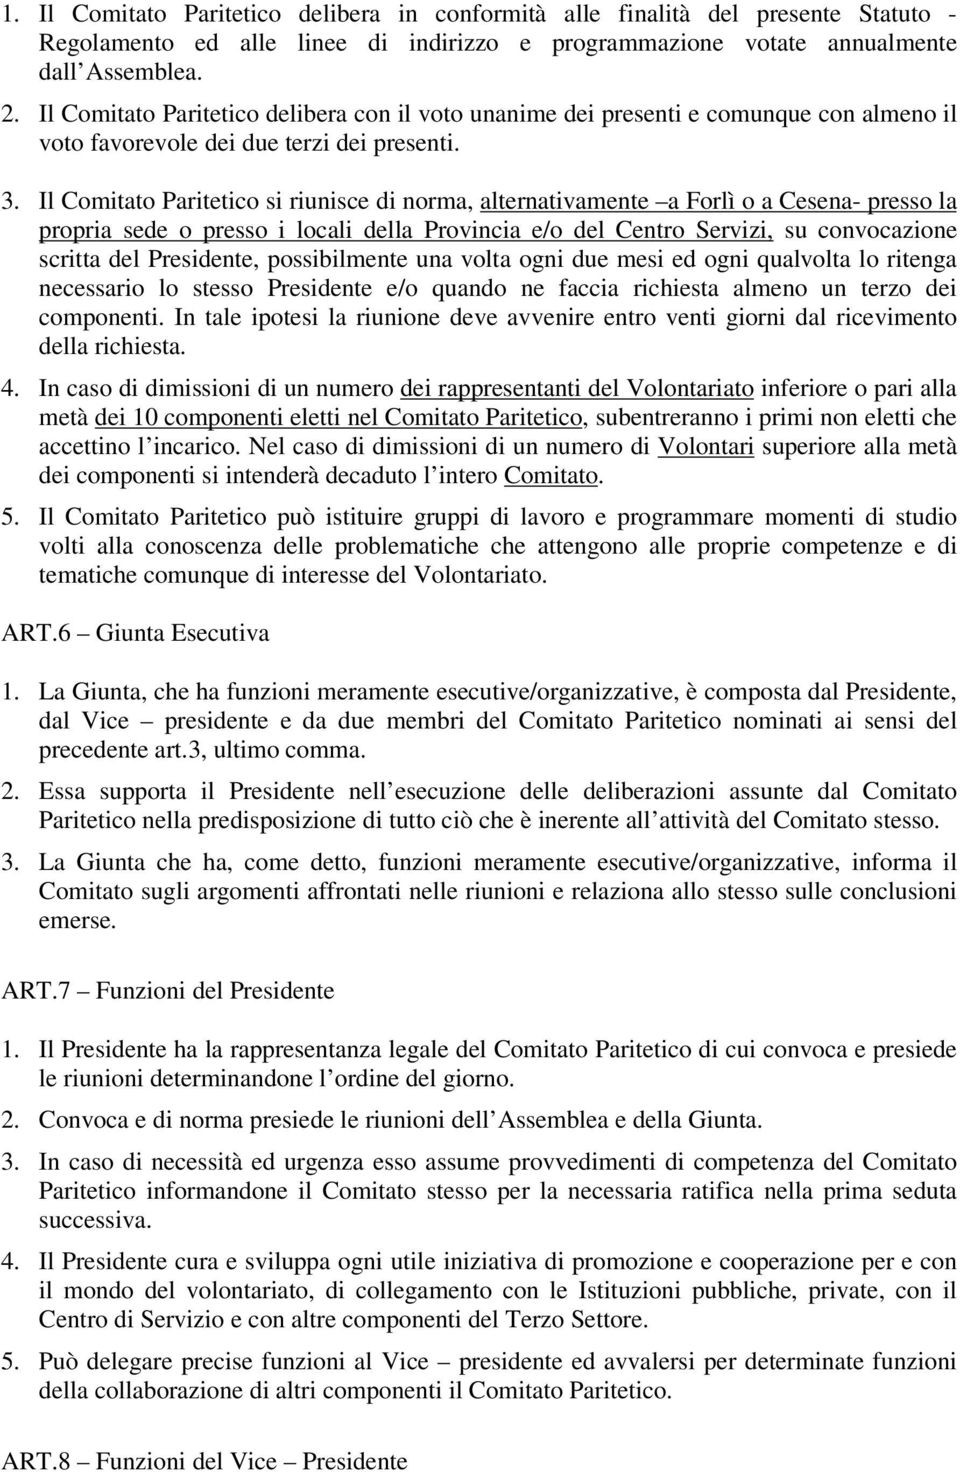 Il Comitato Paritetico si riunisce di norma, alternativamente a Forlì o a Cesena- presso la propria sede o presso i locali della Provincia e/o del Centro Servizi, su convocazione scritta del